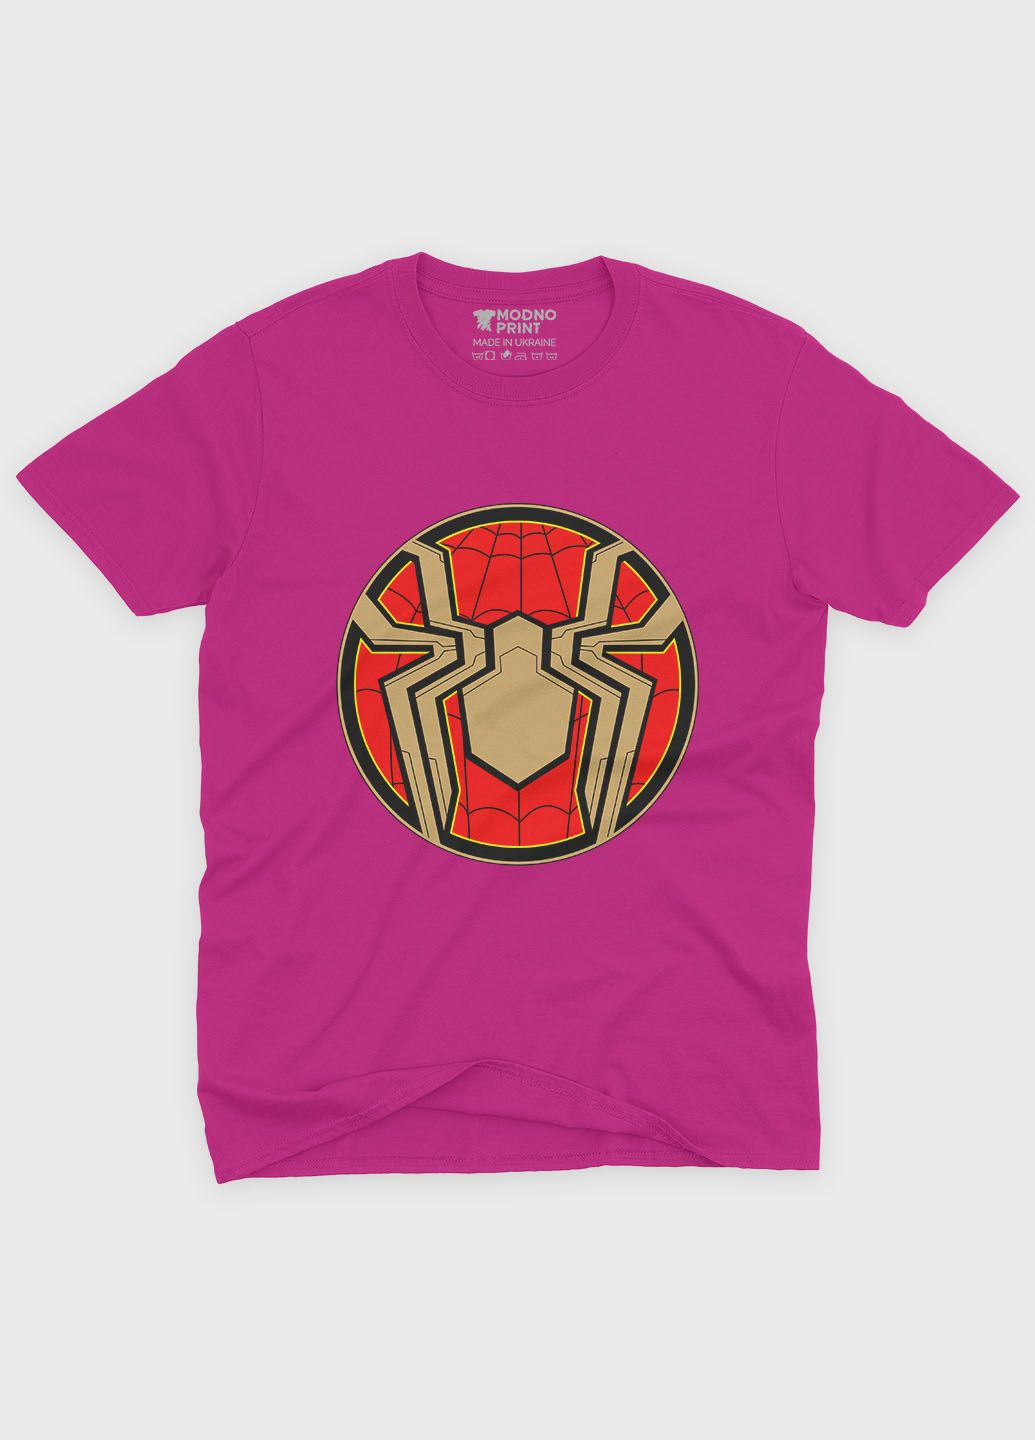 Розовая демисезонная футболка для мальчика с принтом супергероя - человек-паук (ts001-1-fuxj-006-014-105-b) Modno